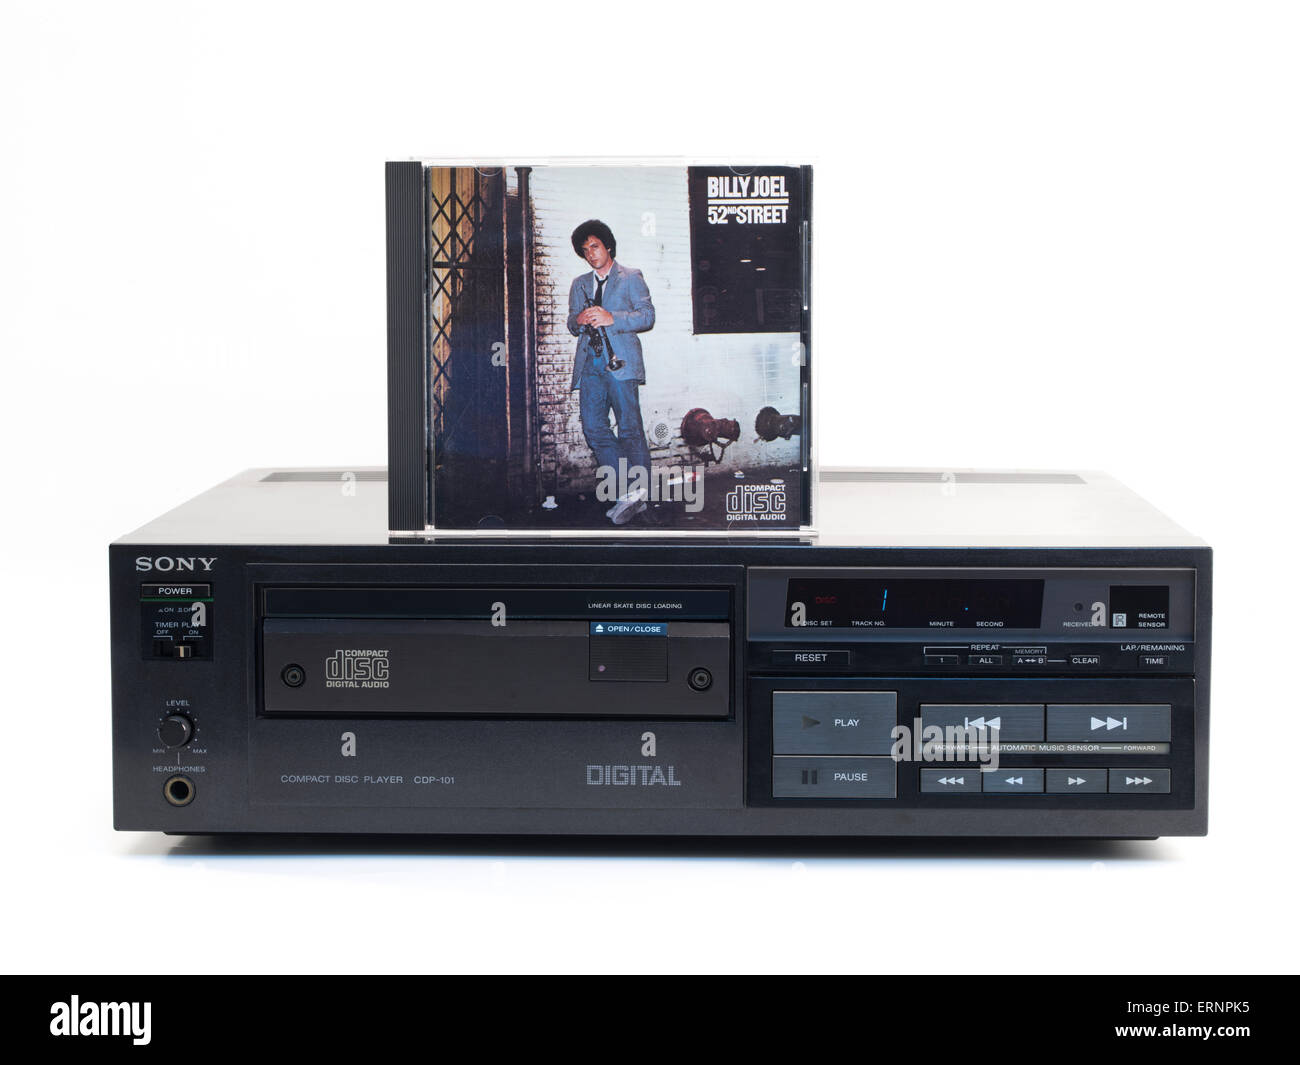 Sony CDP-101 , il primo al mondo commercialmente rilasciato lettore compact disc. Billy Joel 52nd Street. Il primo CD rilasciato 1982 Foto Stock